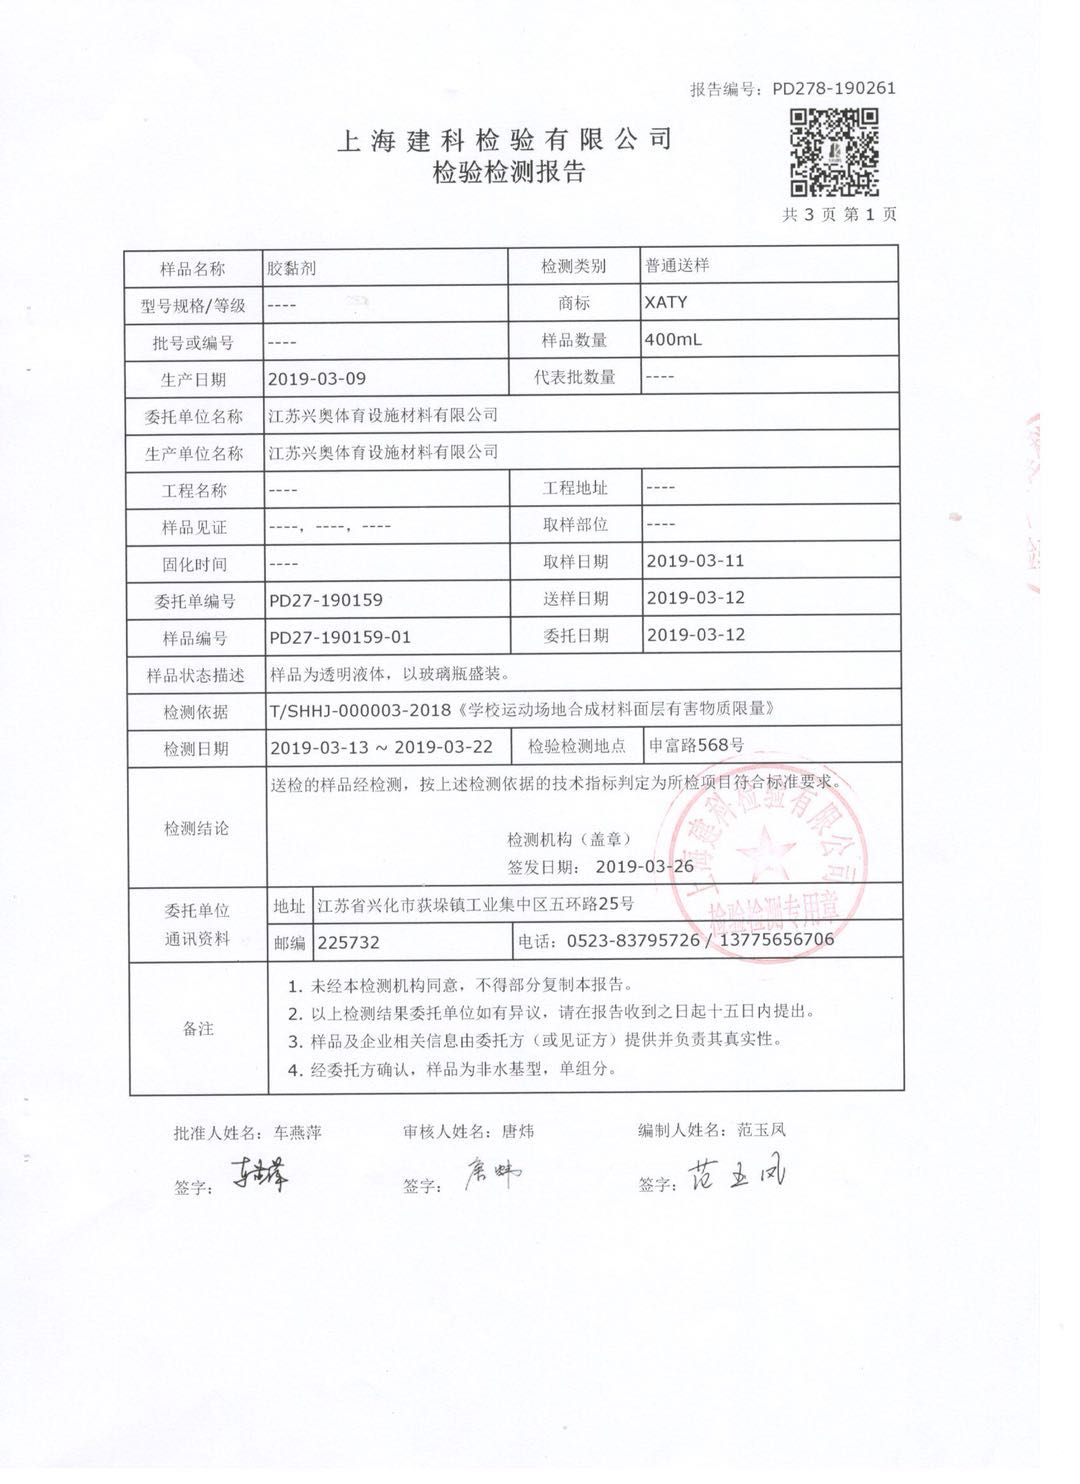 上海建科检验有限公司-检验检测报告